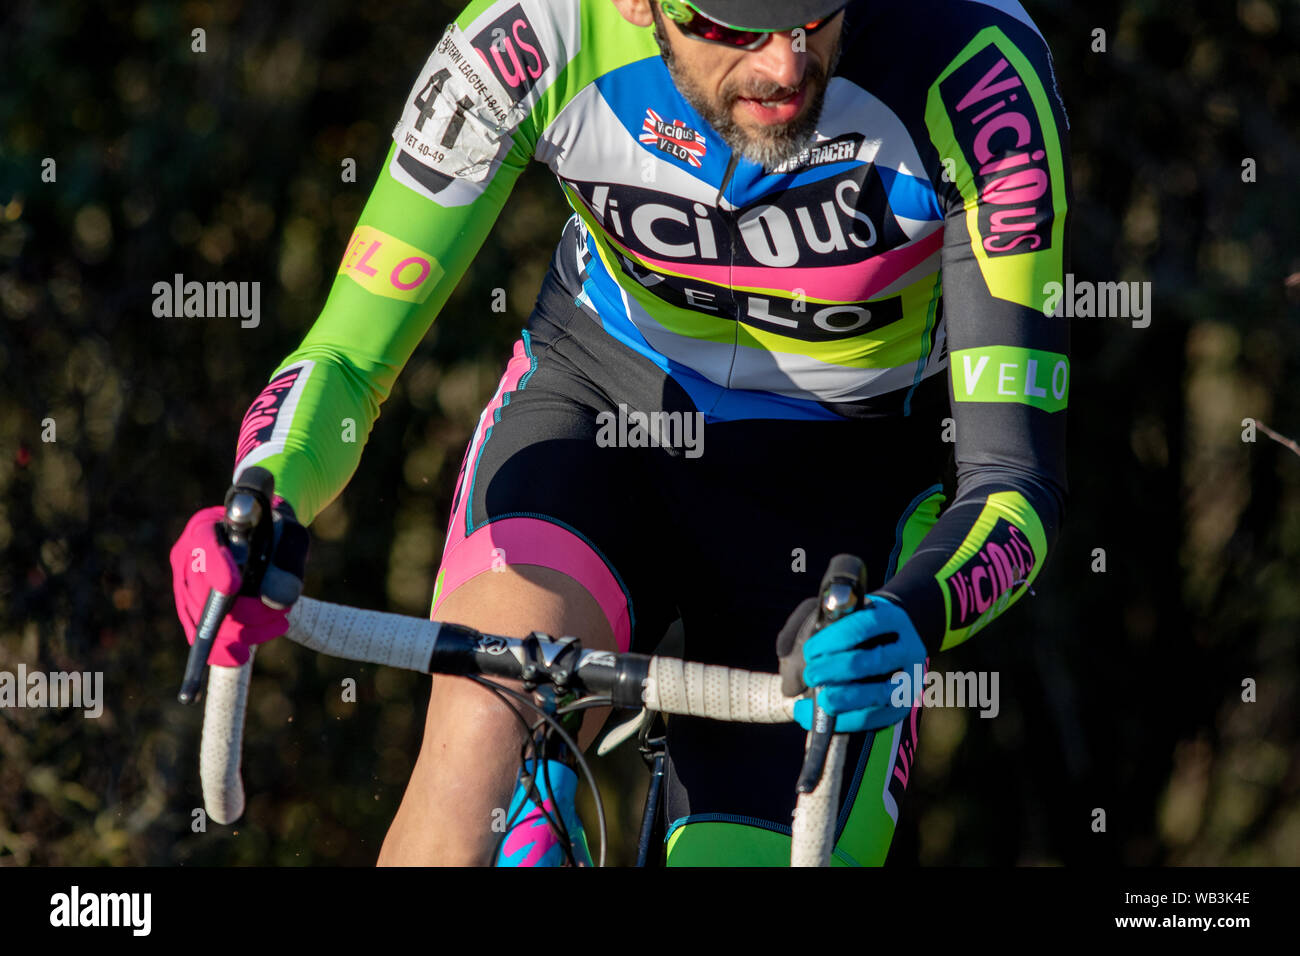 Il Ciclo-cross pilota in un vizioso velo colorato luminosamente jersey Foto Stock